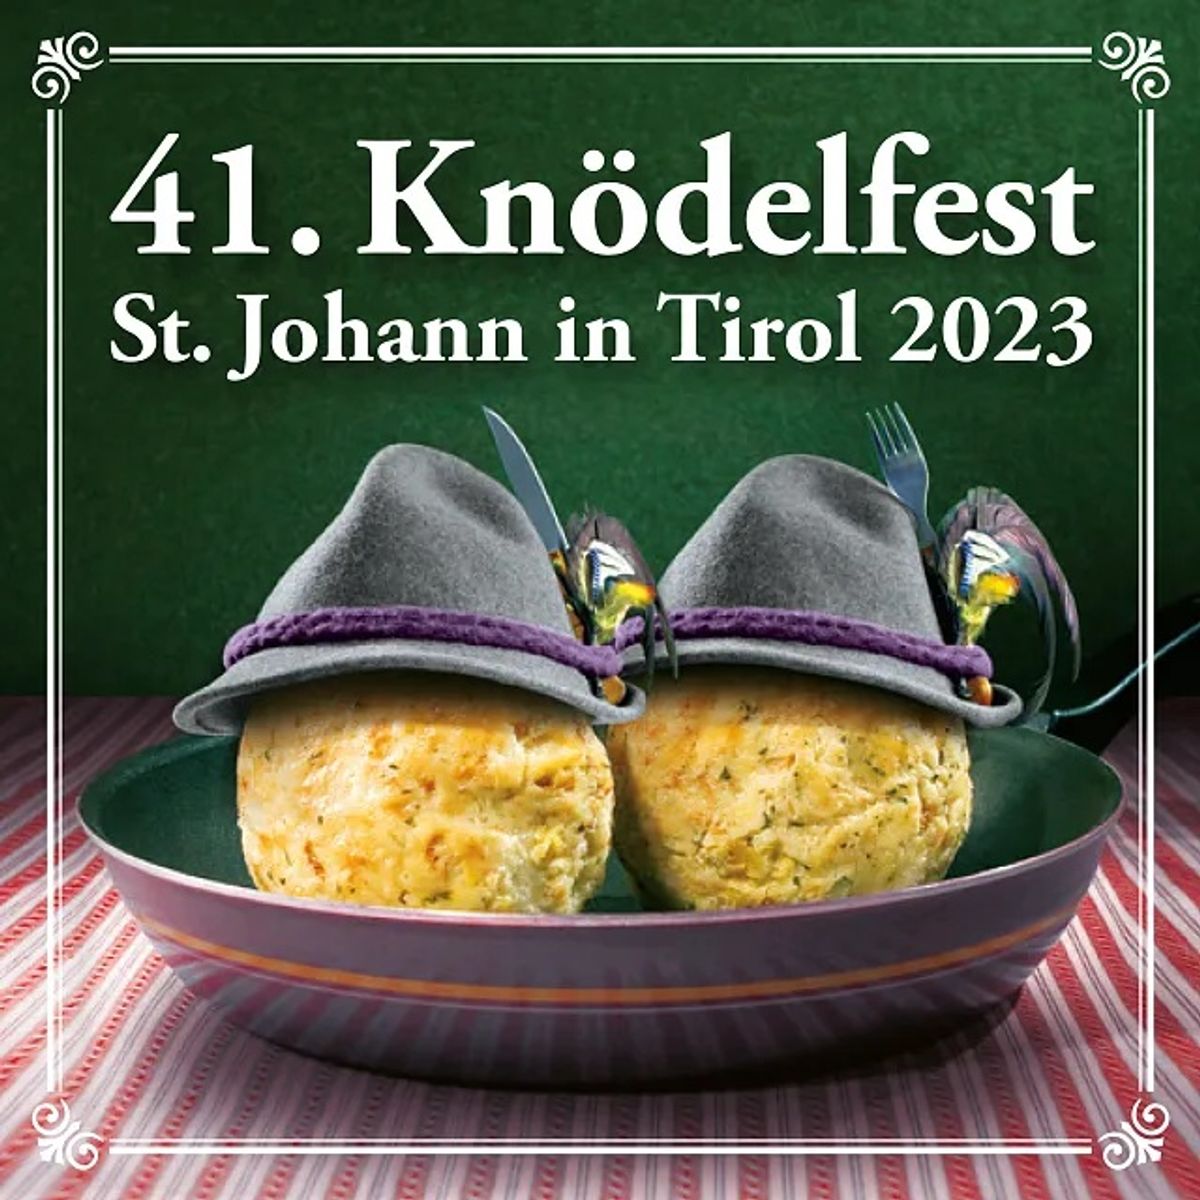 Knödelfest Angebot inkl. Eintritt zum Fest am 23. Sept.!